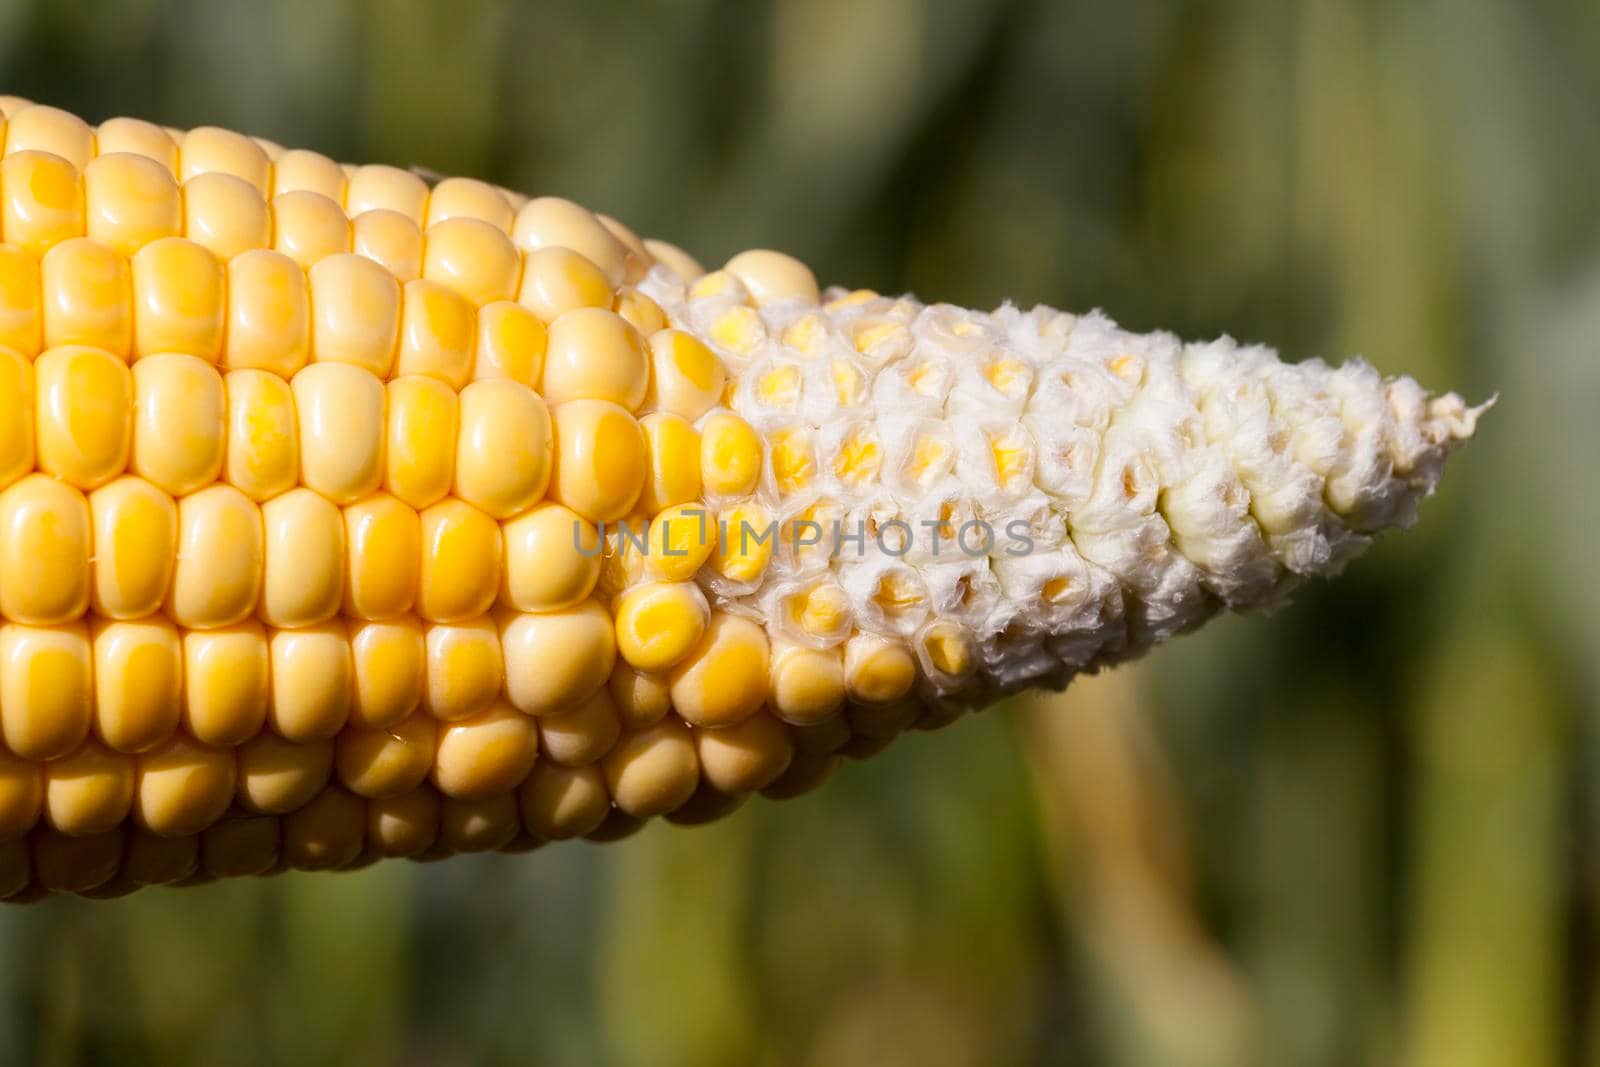 An ear of corn ripen poorly by avq